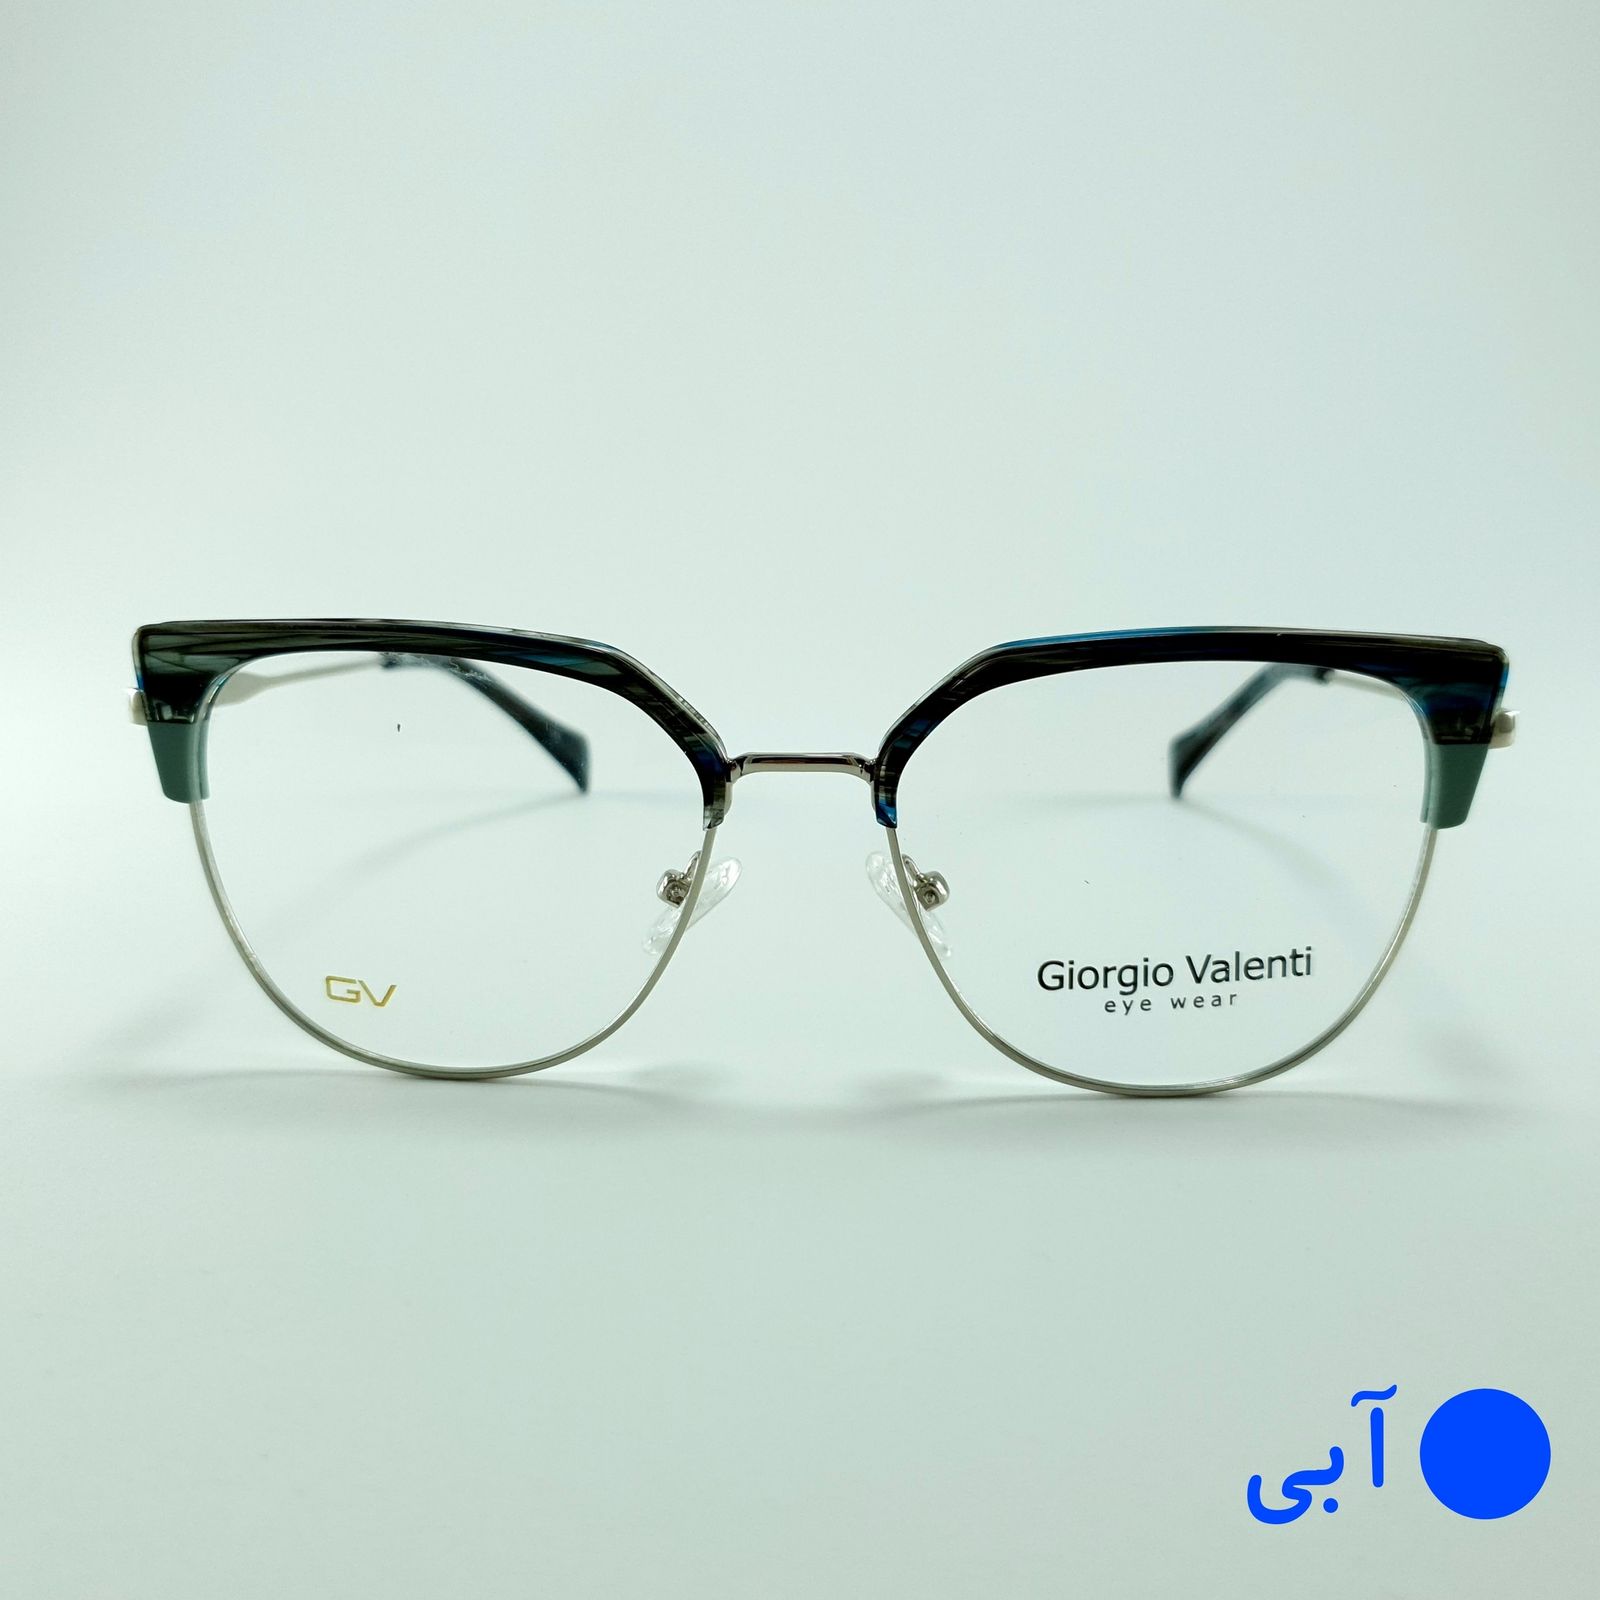 فریم عینک طبی زنانه جورجیو ولنتی مدل GV-4727 -  - 3